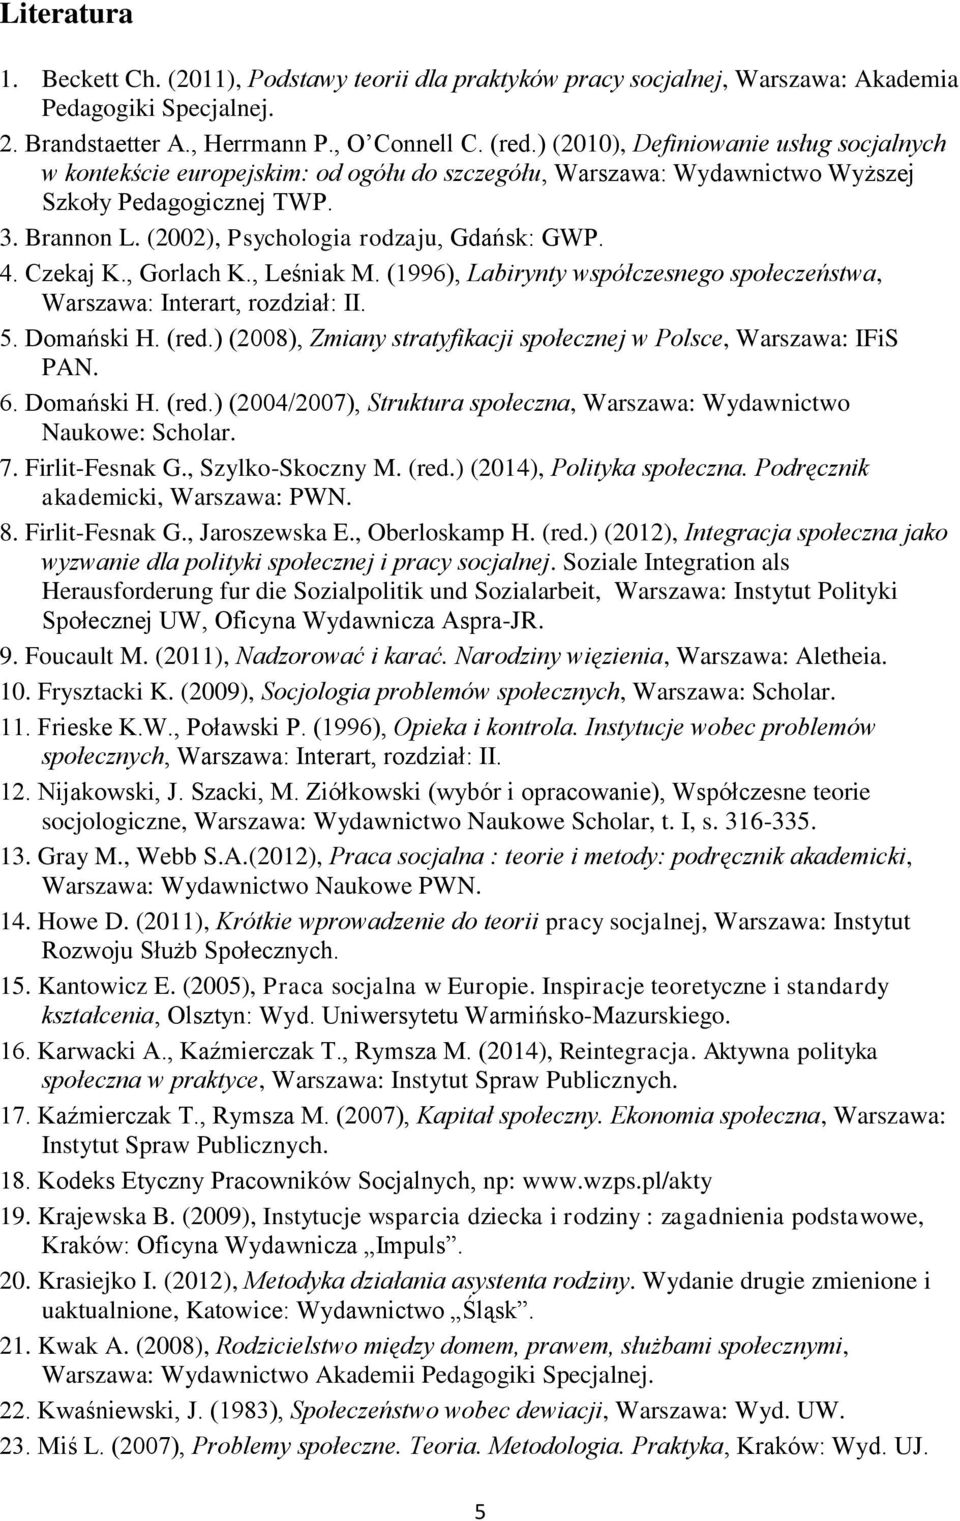 4. Czekaj K., Gorlach K., Leśniak M. (1996), Labirynty współczesnego społeczeństwa, Warszawa: Interart, rozdział: II. 5. Domański H. (red.) (2008), Zmiany stratyfikacji w Polsce, Warszawa: IFiS PAN.